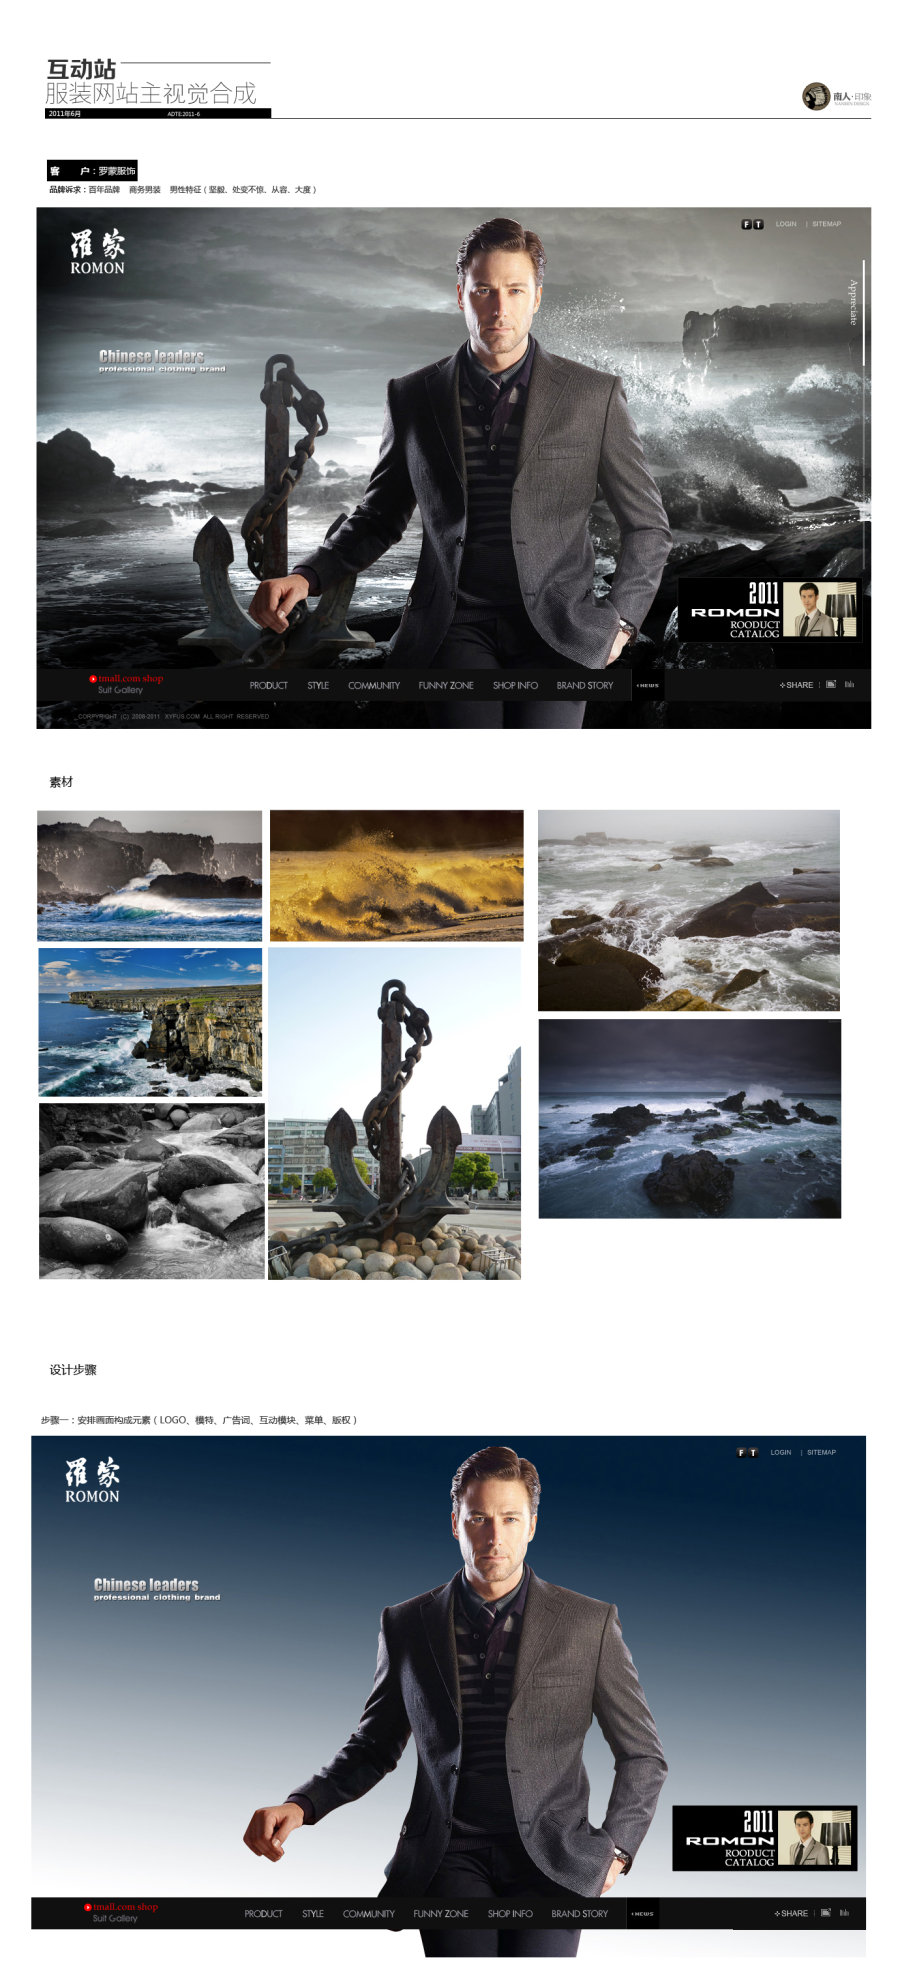 PS罗蒙男士品牌服装网站视觉效果宣传图合成制作过程2